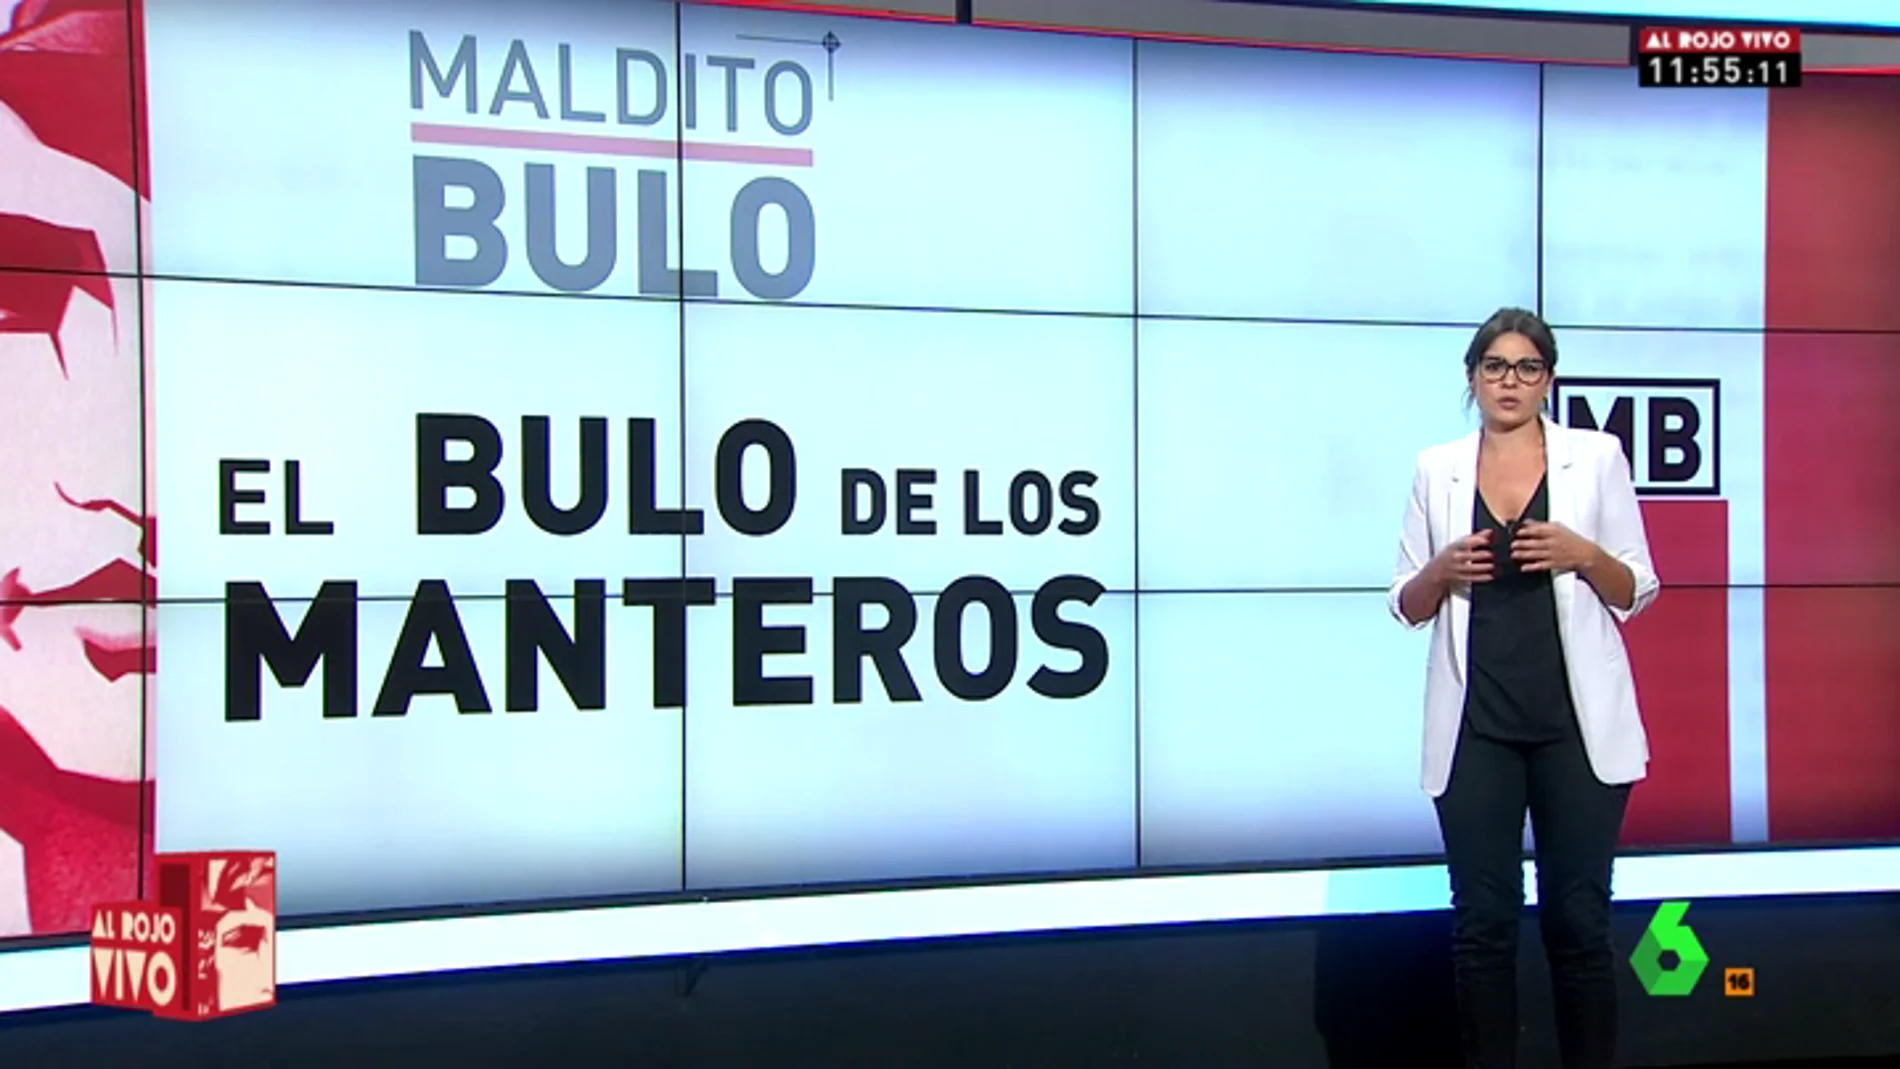 'Maldito bulo' desmonta las alertas que circulan en redes tras los atentados de Catalunya